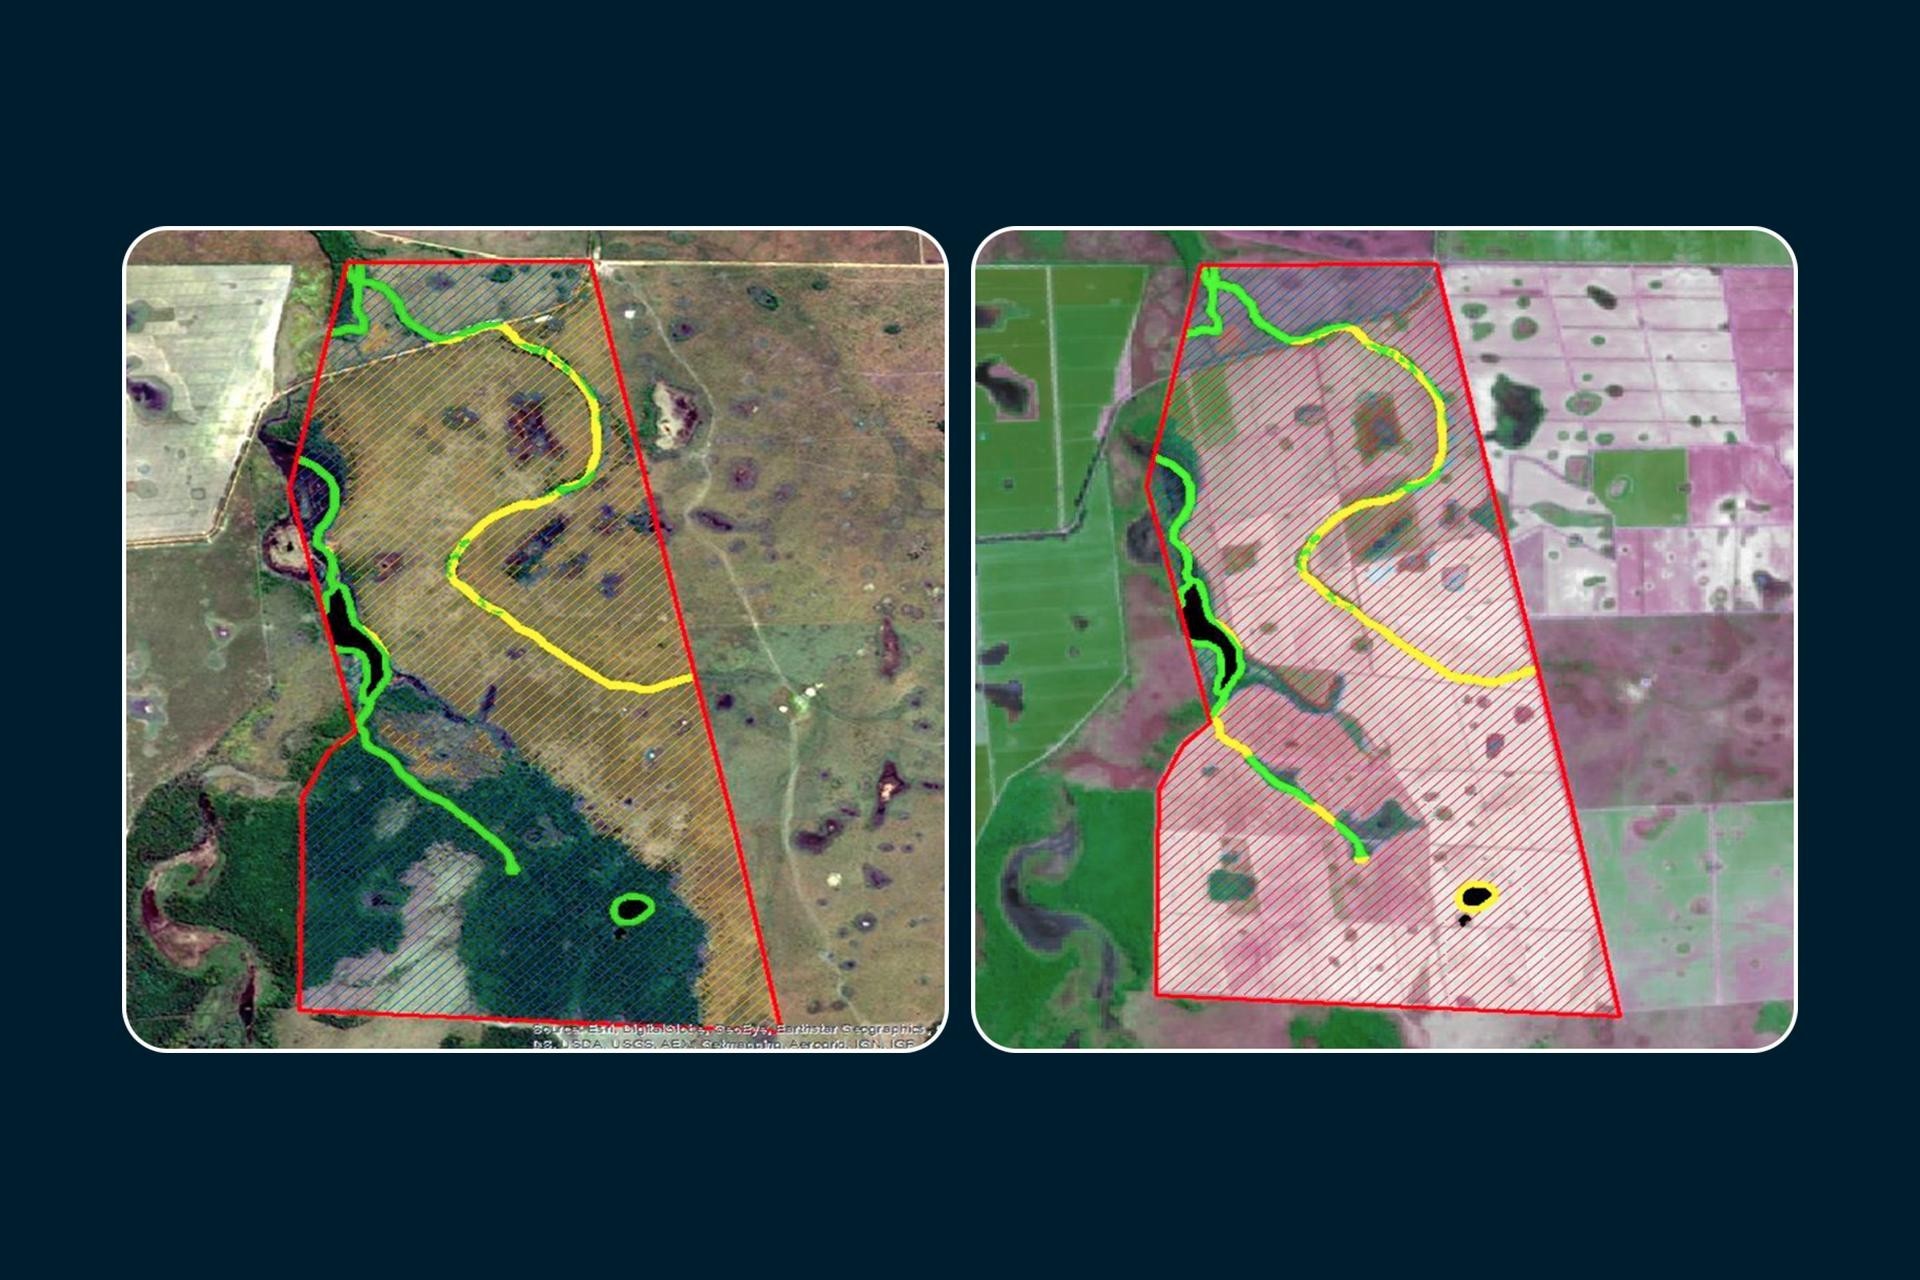 Imagens de satélite mostram o antes (à esq.) e o depois (à dir.) de uma das áreas desmatadas